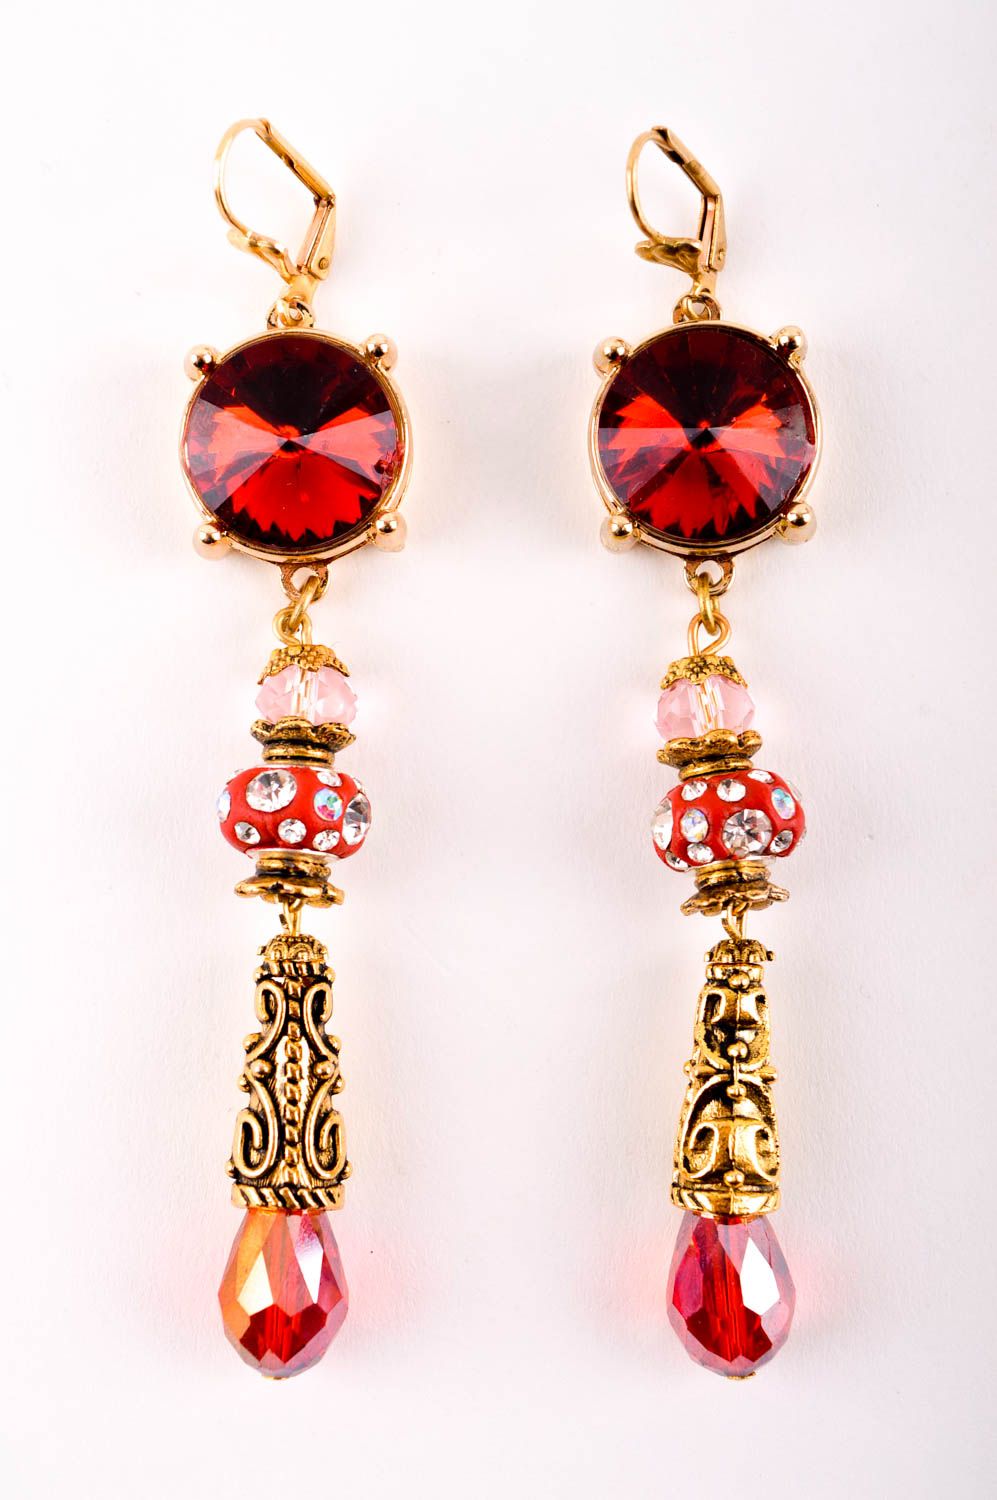 Handmade schöne Ohrringe Modeschmuck Ohrhänger Ohrringe für Damen stilvoll foto 3